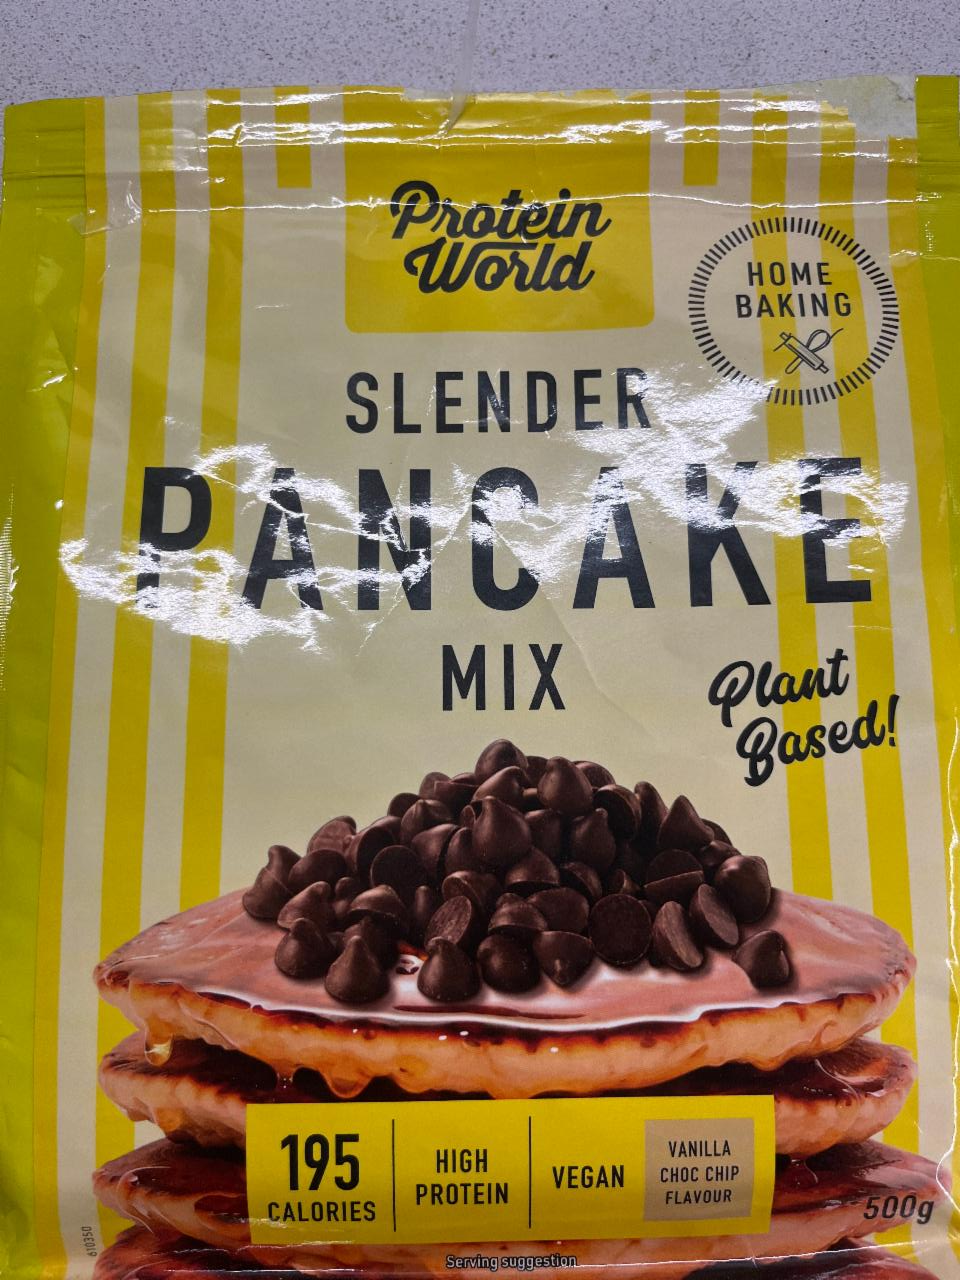 Fotografie - Slender Pancake Mix Vanilla Choc Chip Flavour Protein World